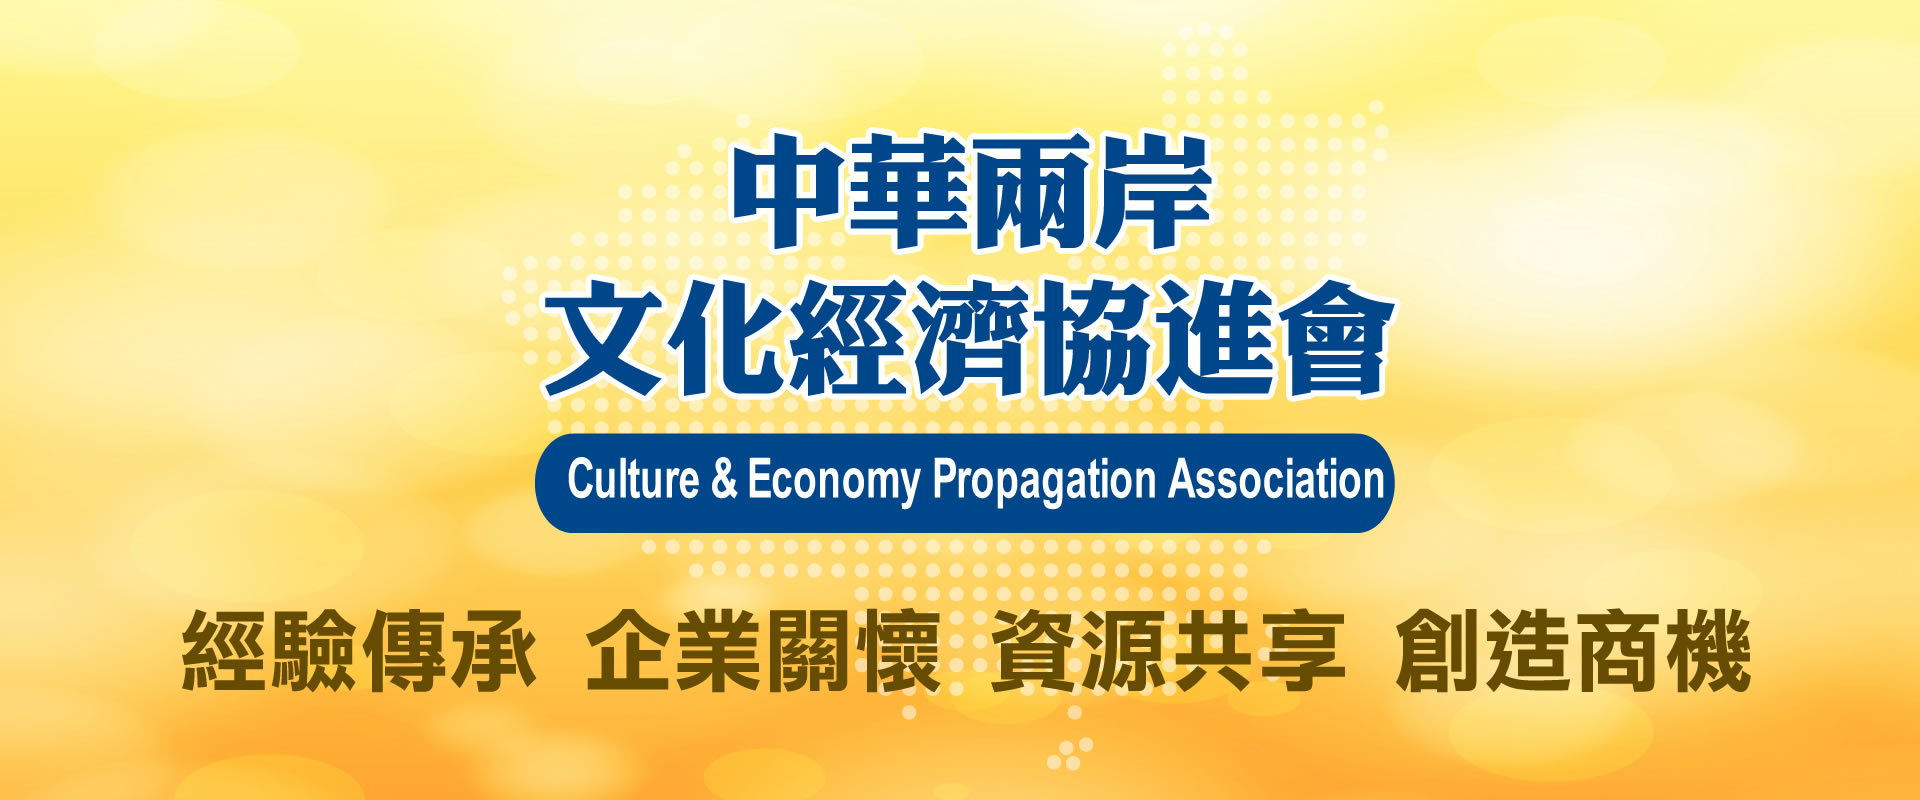 中華兩岸文化經濟協進會(首頁形象圖)－001